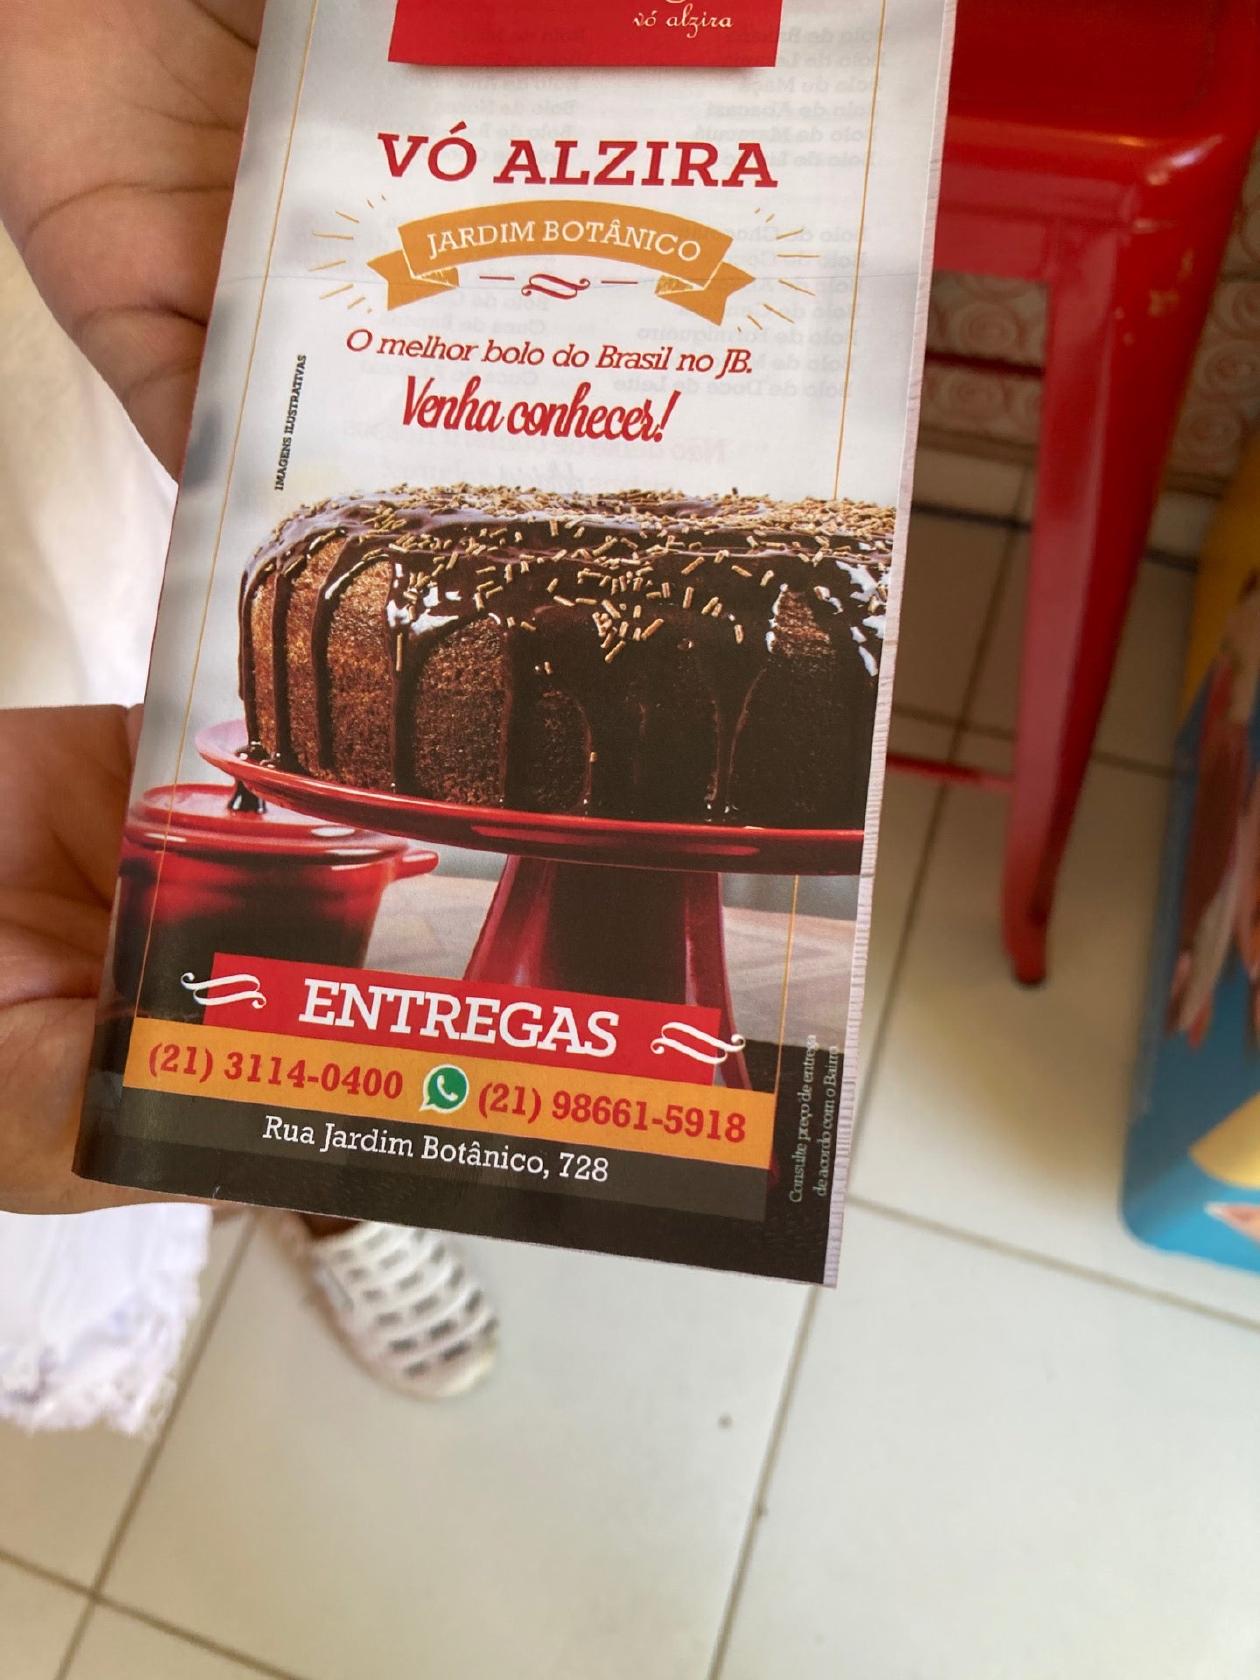 Bolo de chocolate com calda - Picture of Fabrica de Bolos Vo Alzira Rio de  Janeiro - Tripadvisor